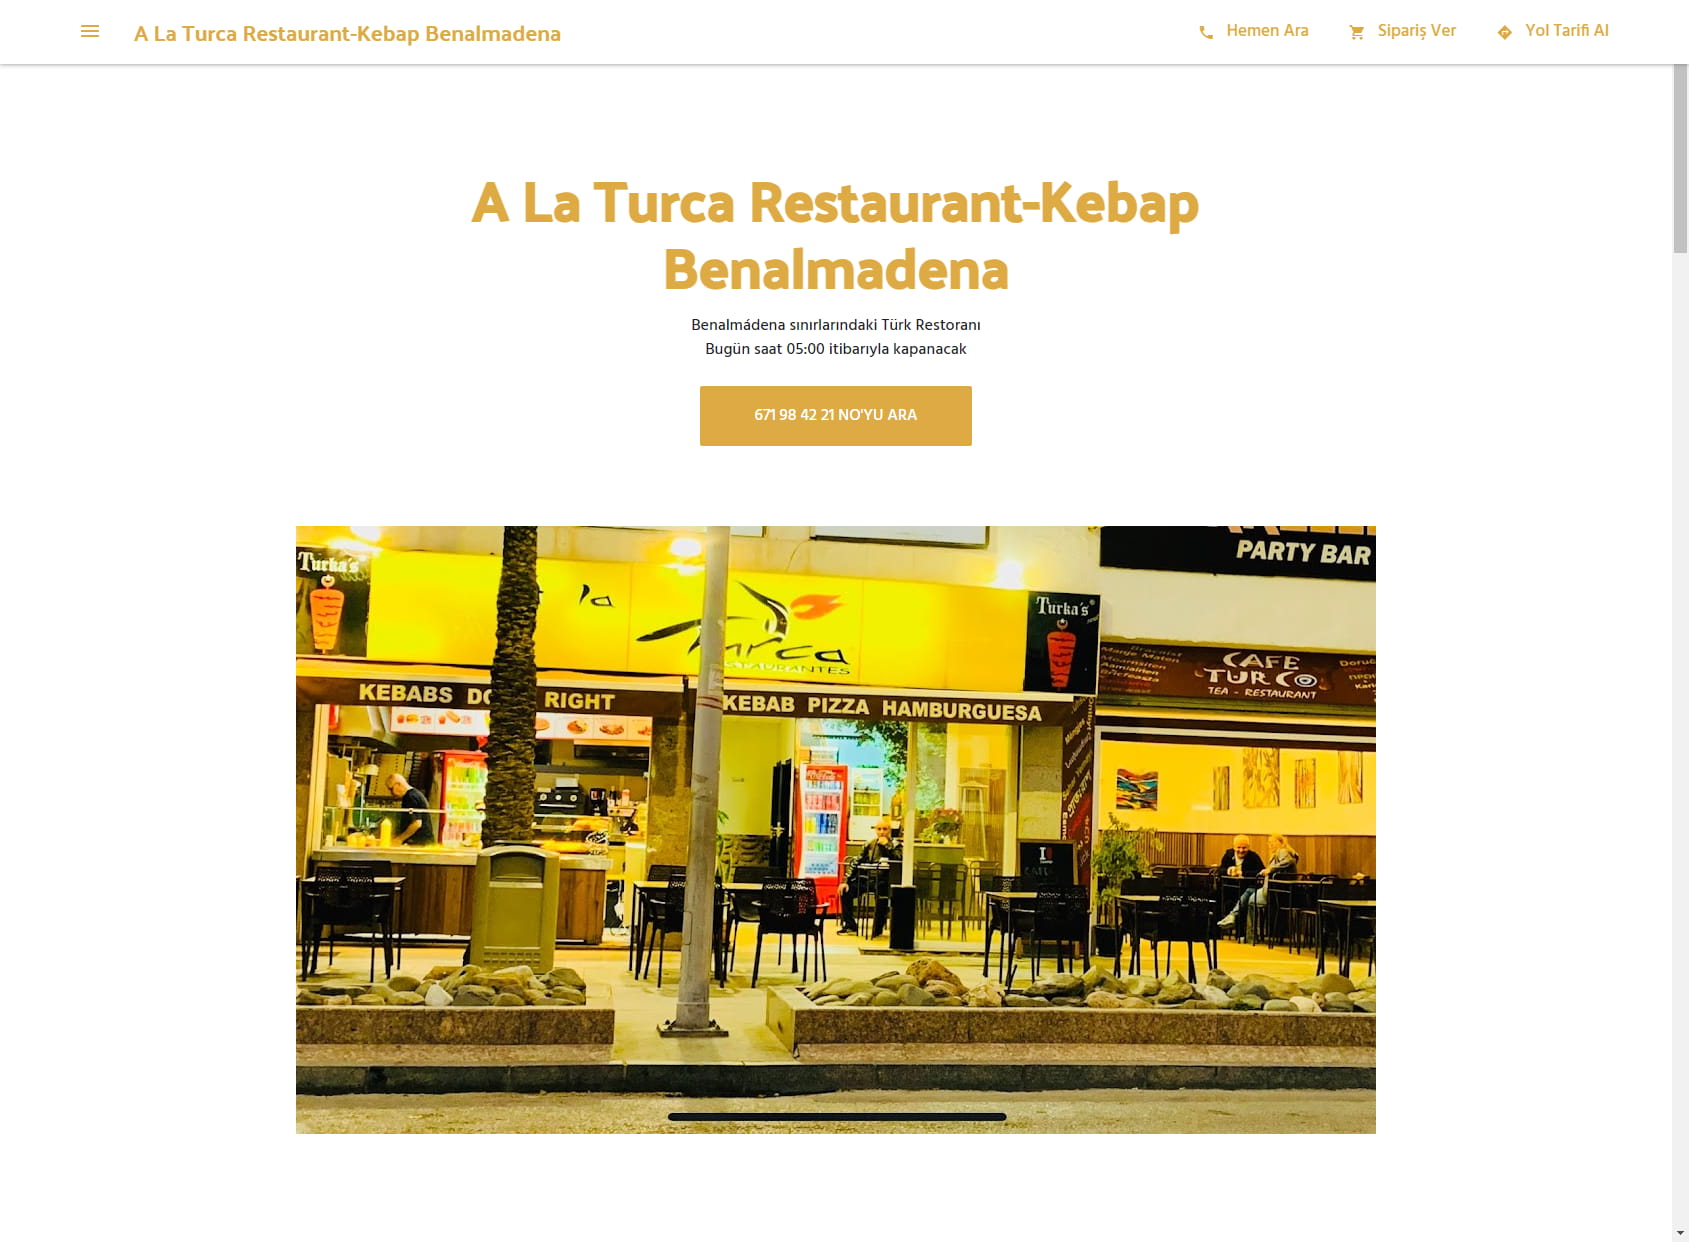 A La Turca Restaurant